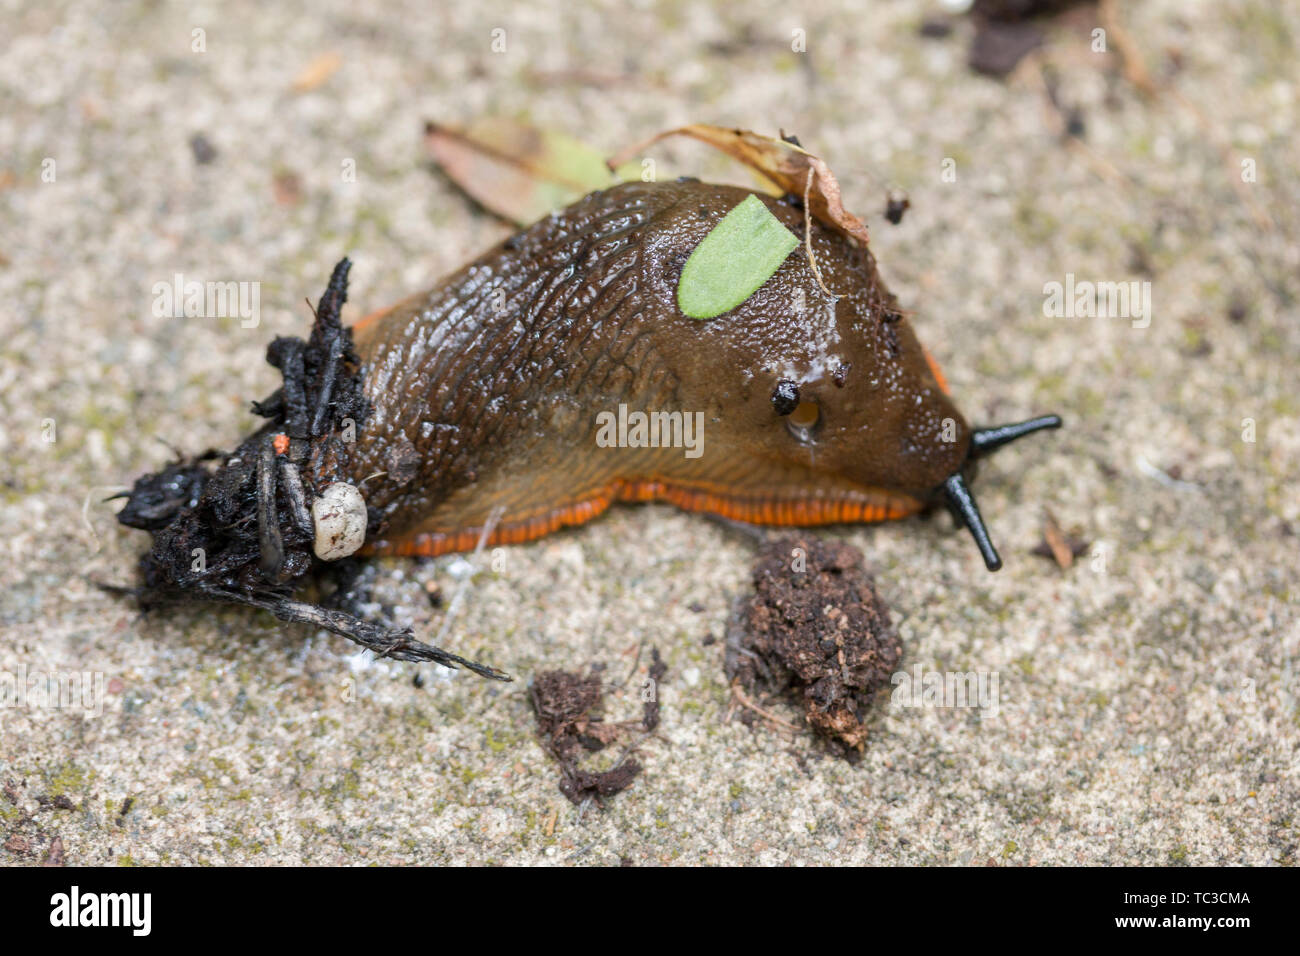 Orange variety of the Large Black Slug Arion ater agg Crawling on log Cotswolds UK. slugs in house, snails and slugs Stock Photo